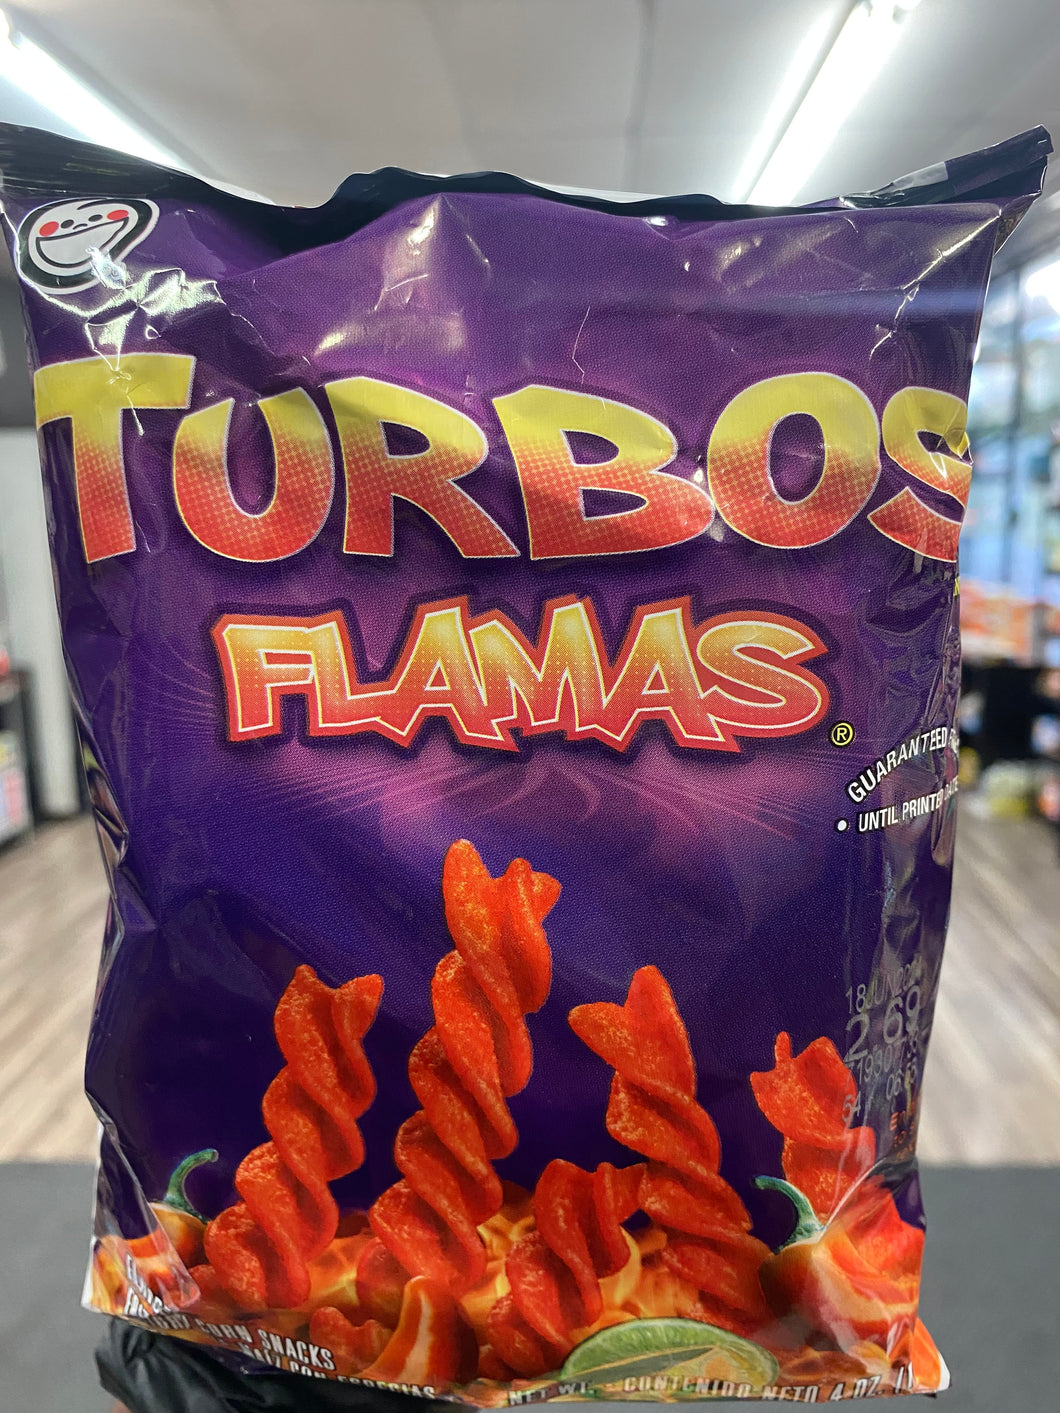 Turbos Flamas Corn Snacks (Texas)